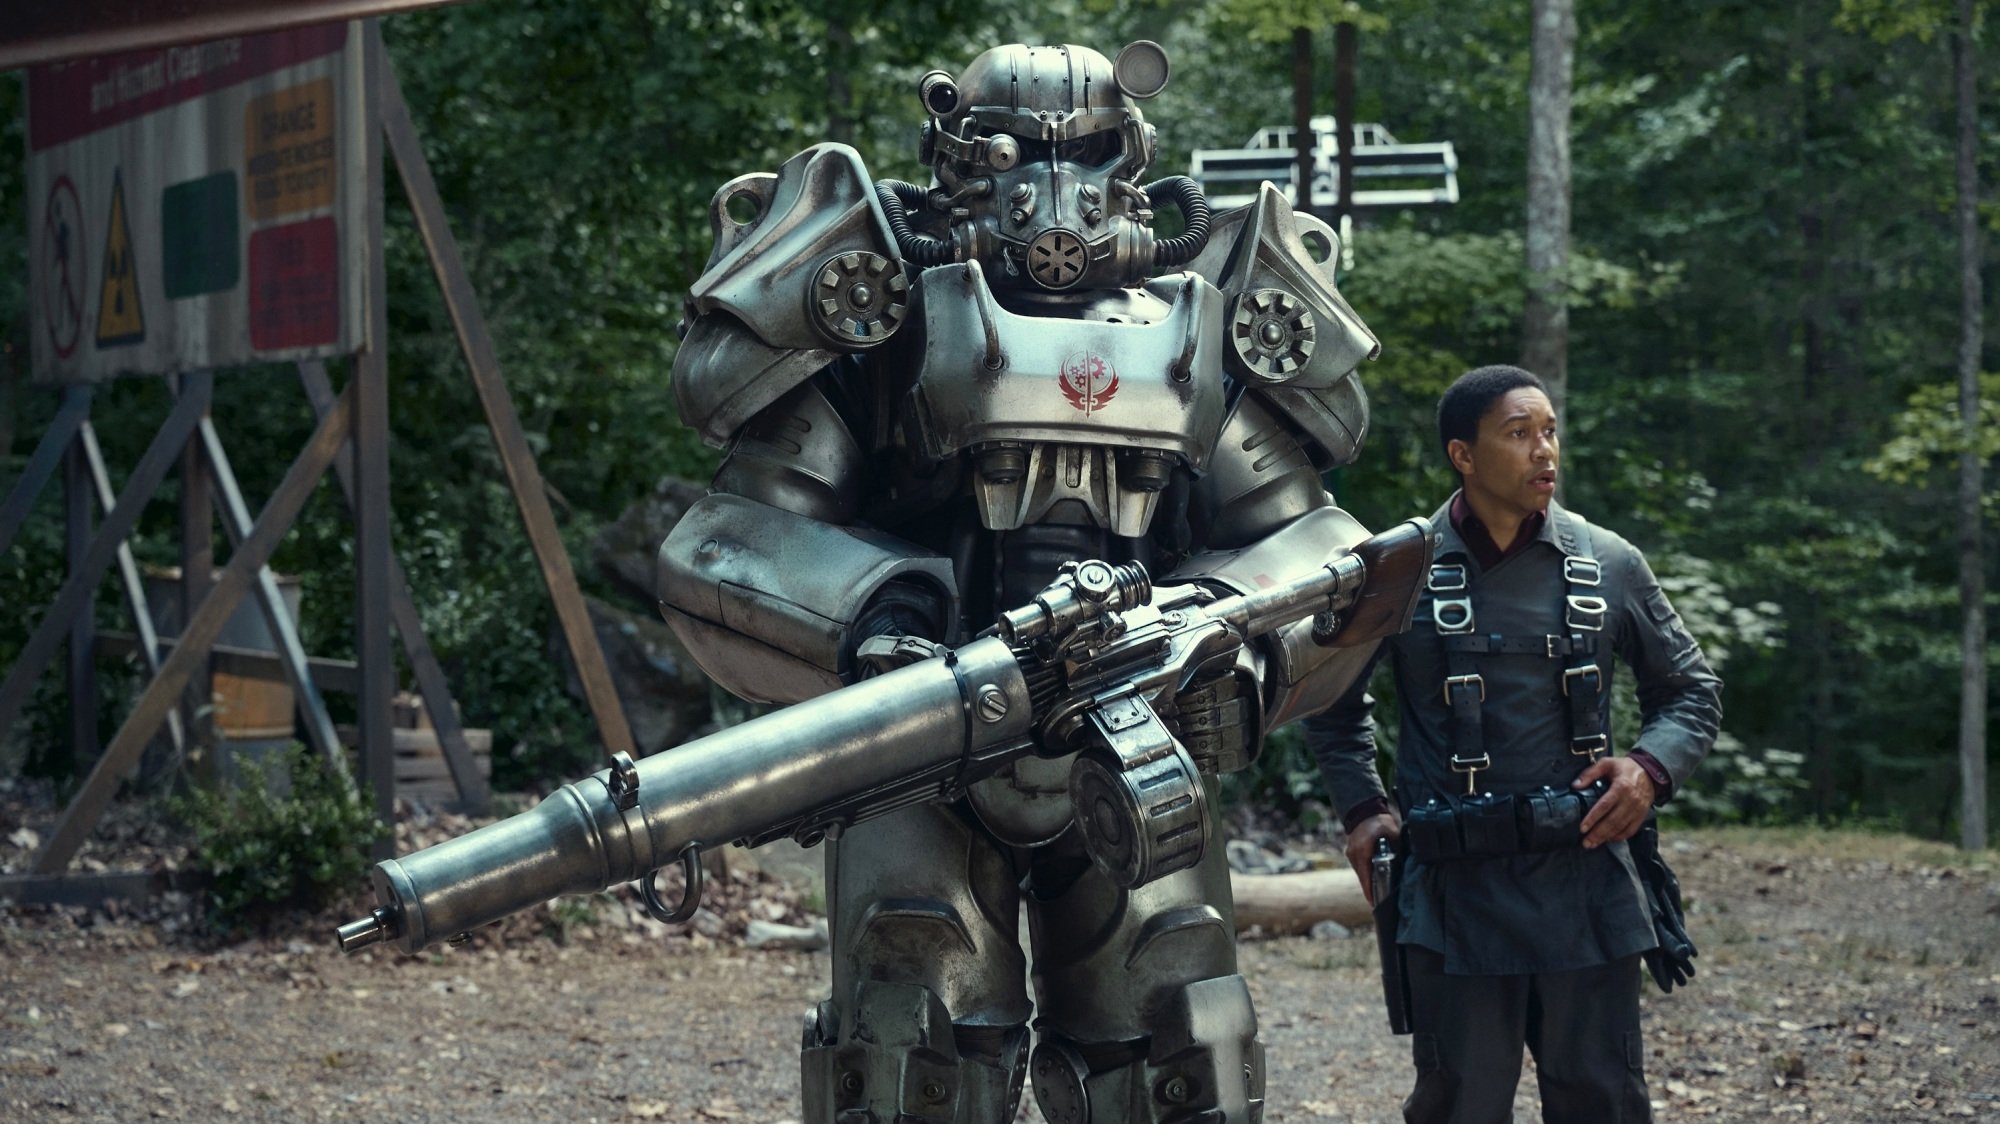 Maximus de "Fallout" se tient à côté d'une énorme armure assistée.